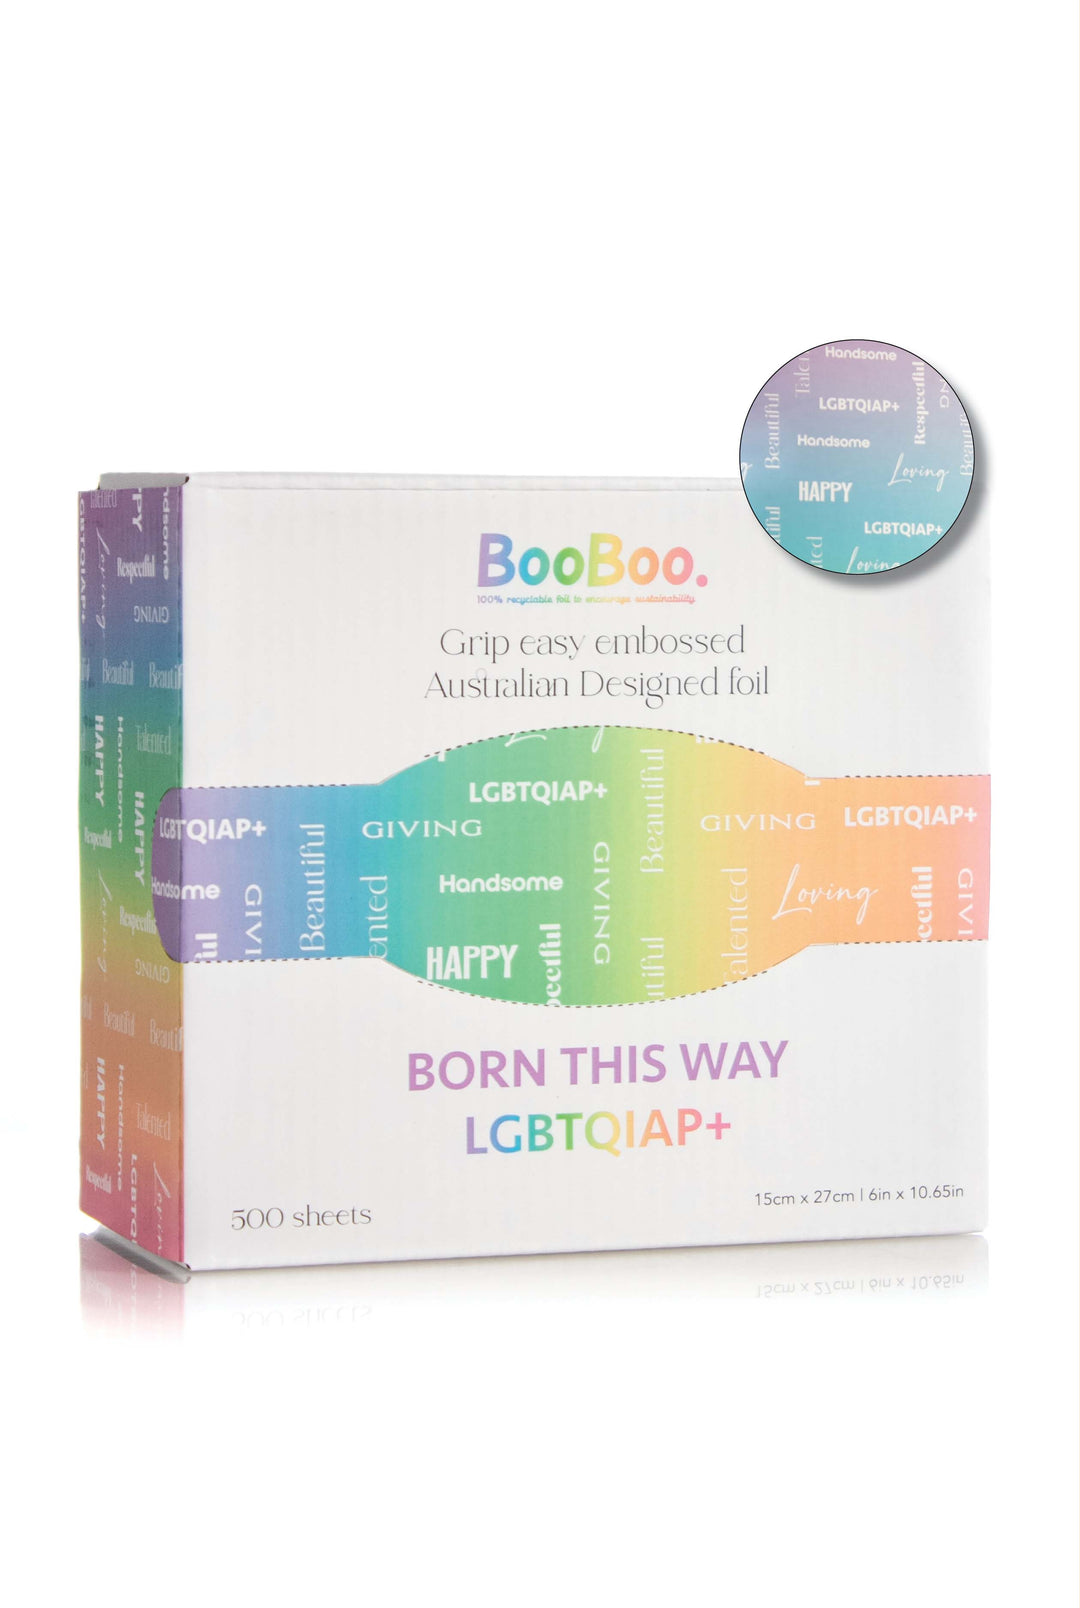 BOOBOO POP UP 15X27CM 500 SHEET LGBTQIAP+